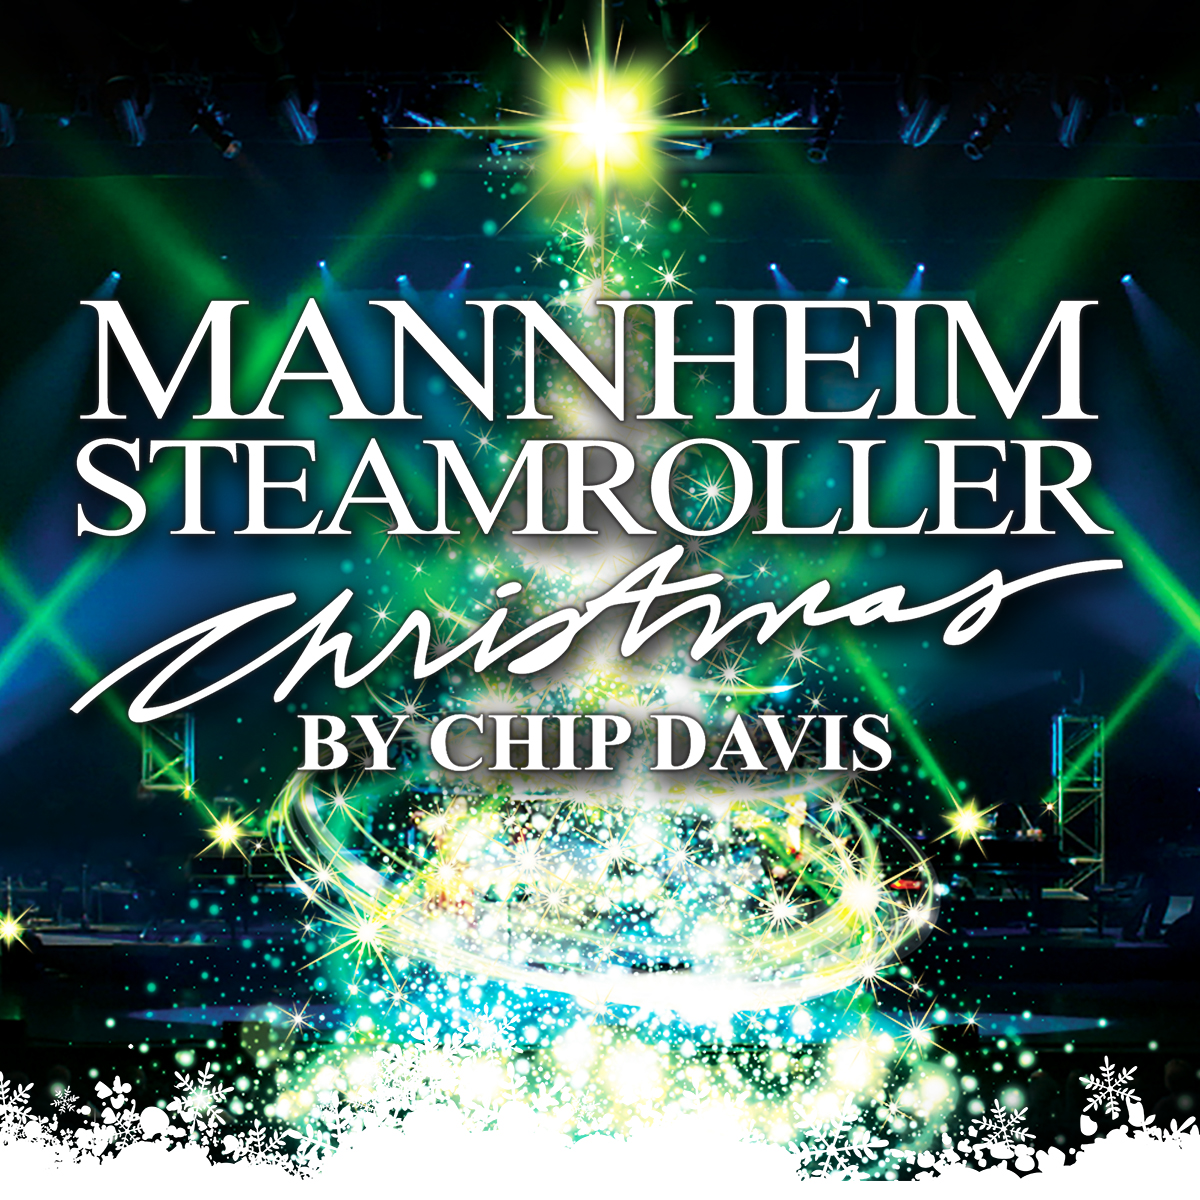 Mannheim steamroller tour dates